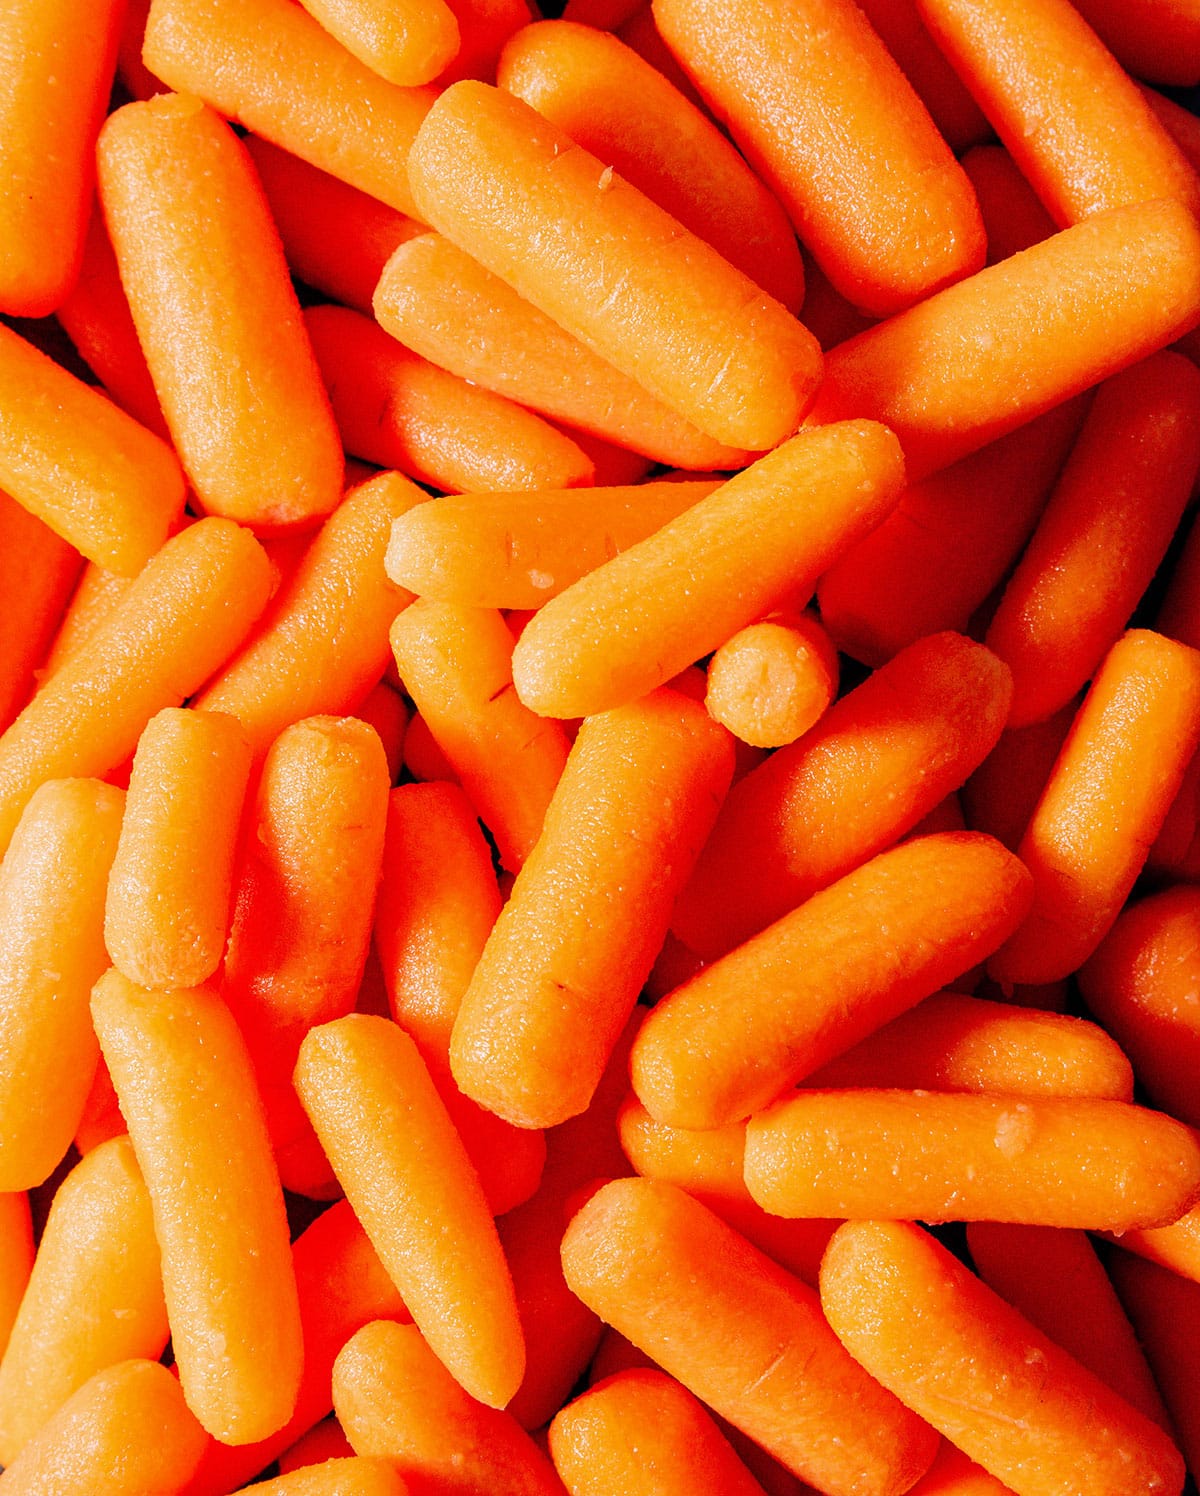 Many baby carrots